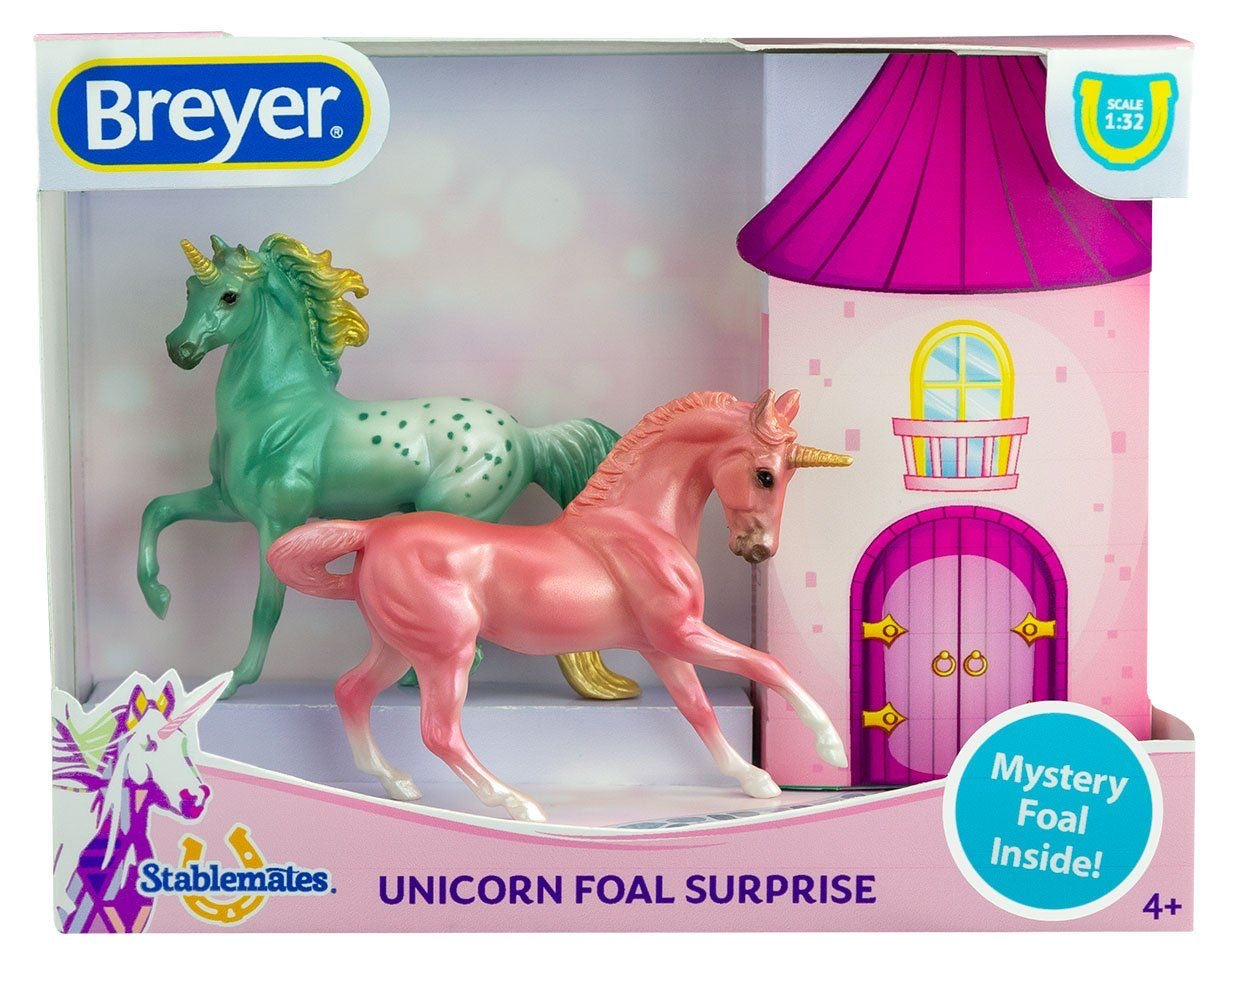 Unicorn foal surprise